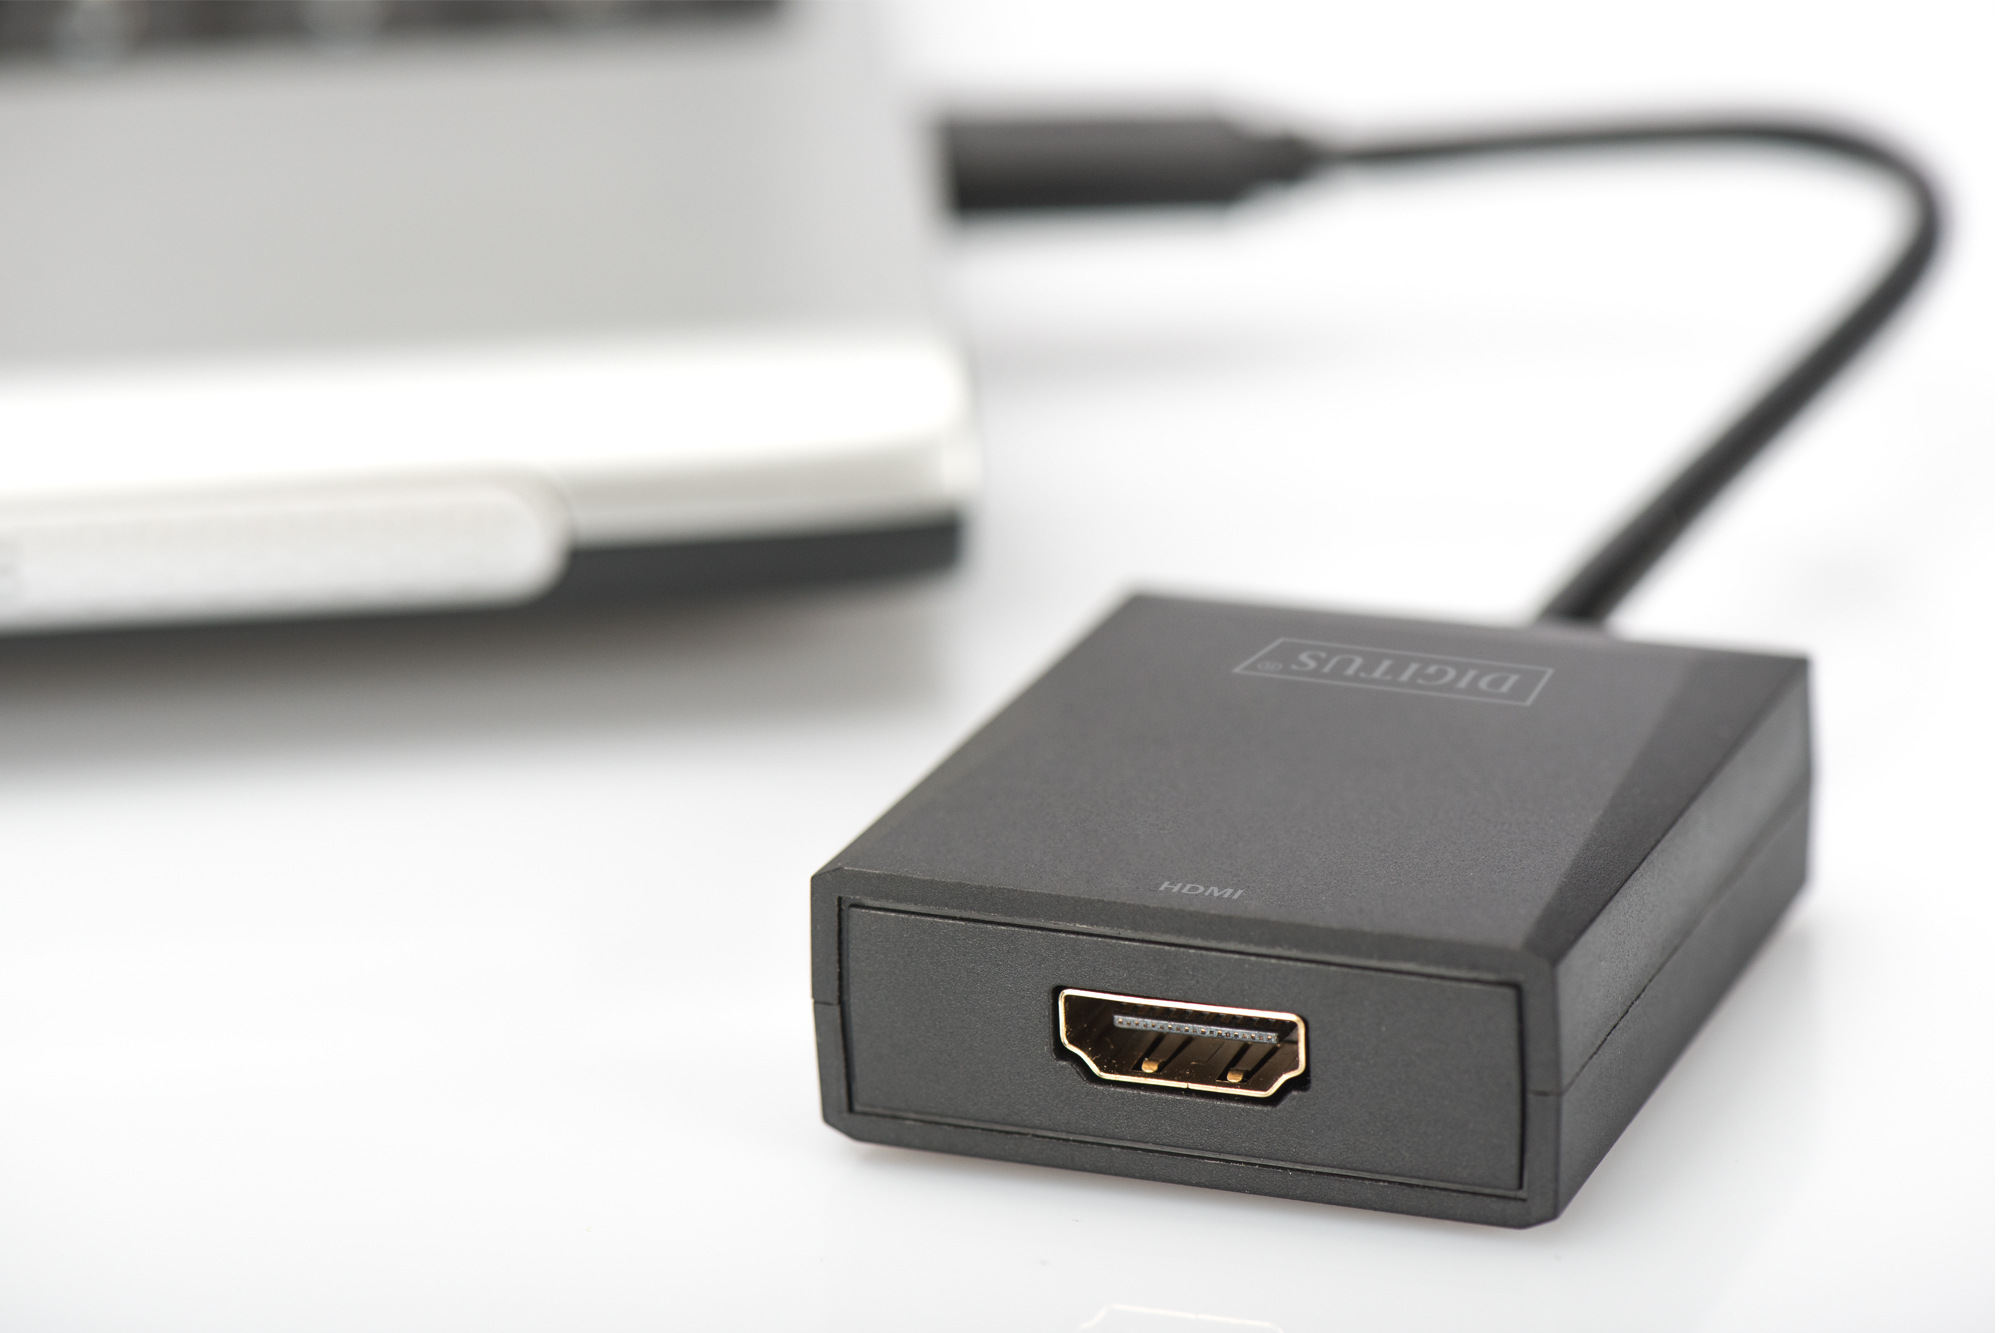 DIGITUS USB 3.0 auf HDMI Adapter